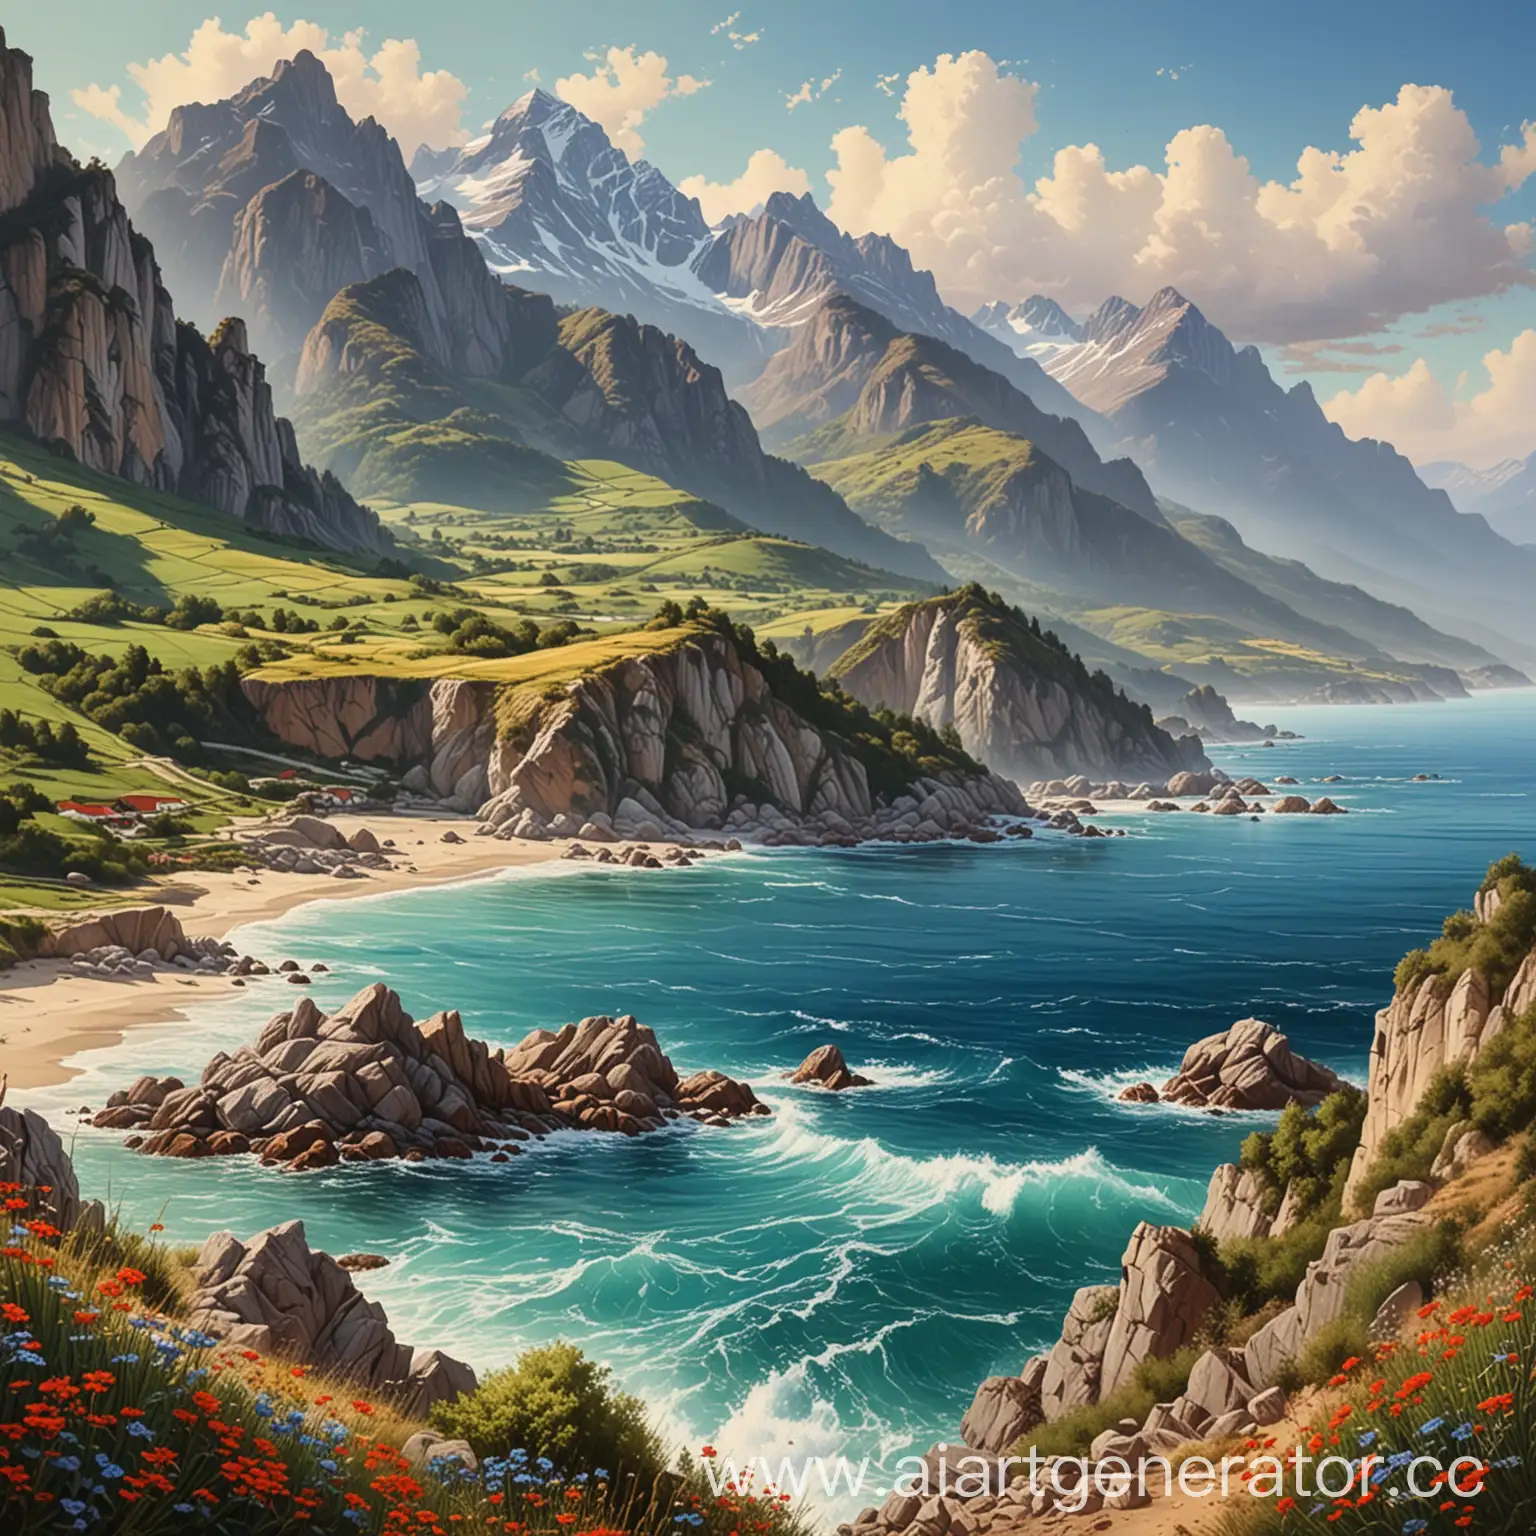 реалистичная картина, вокруг море и горы, красивая природа, шикарный вид вокруг